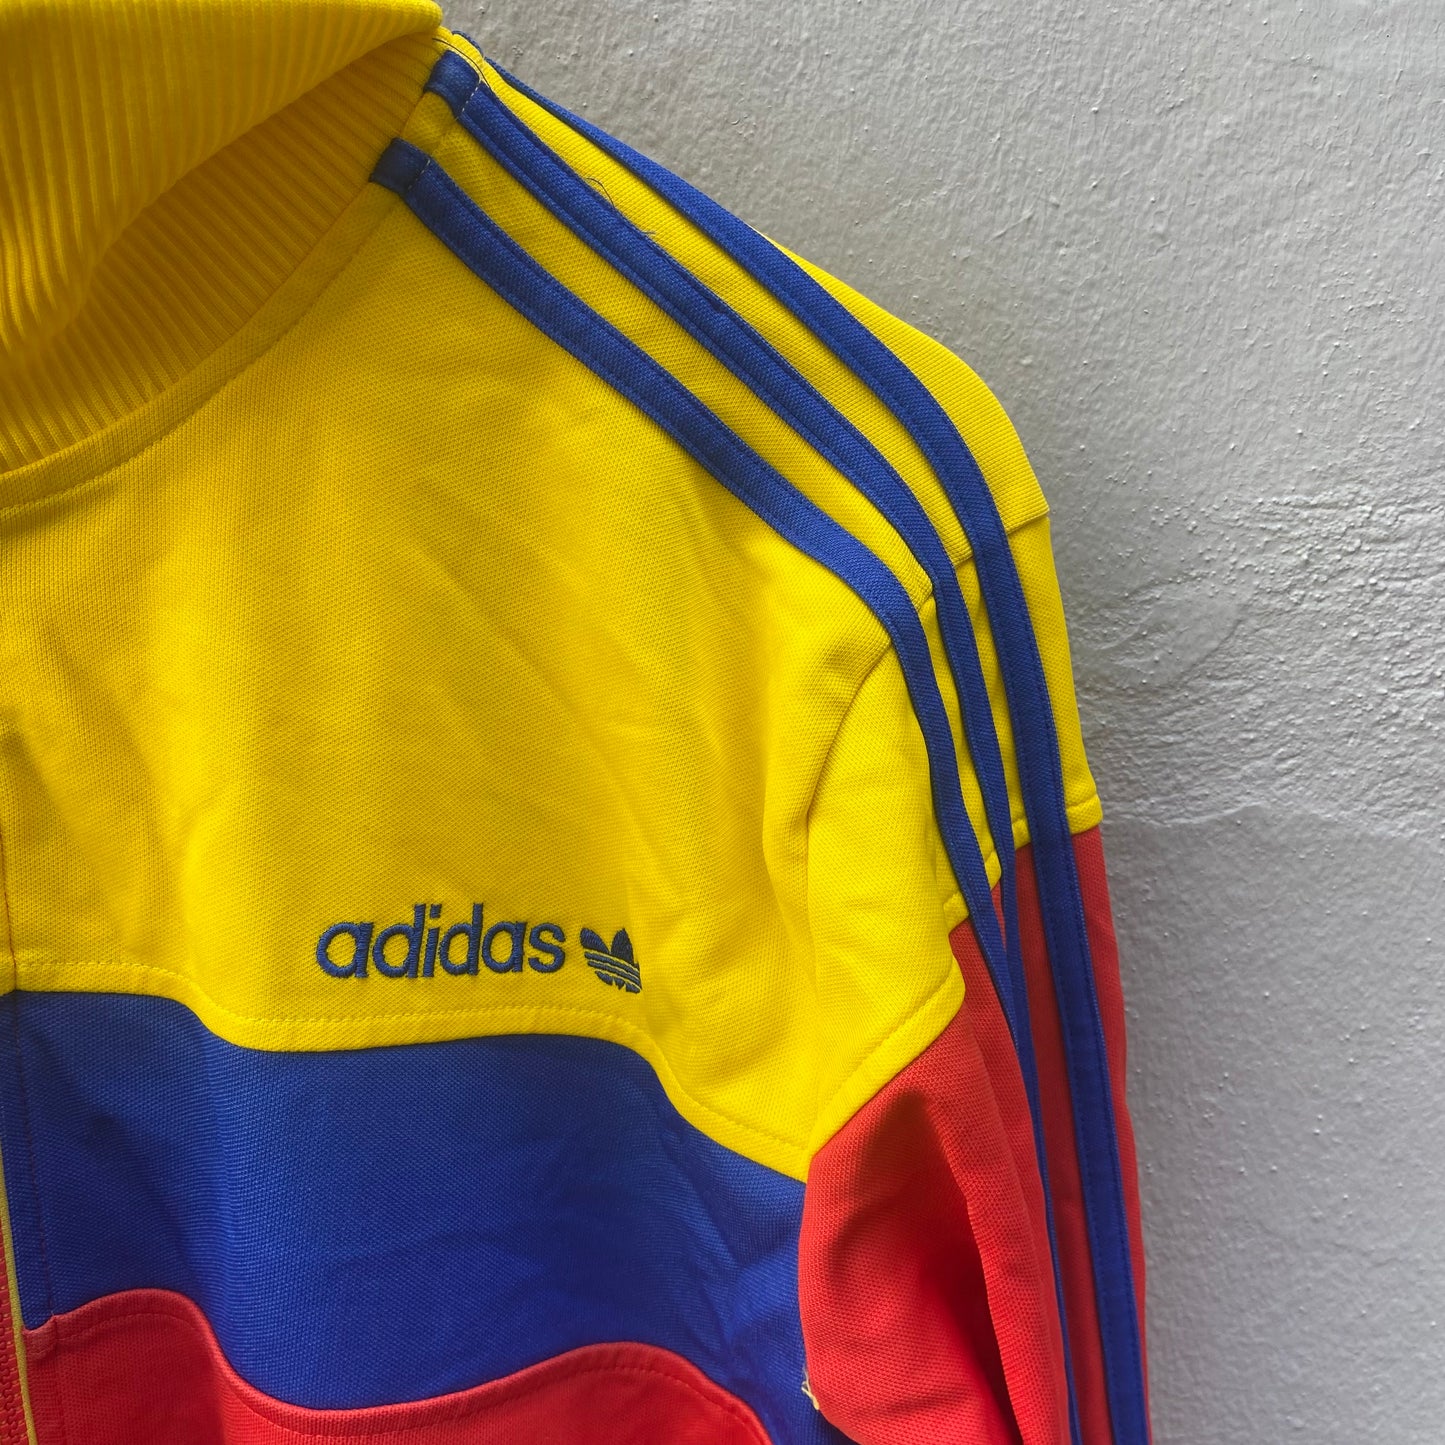 Ecuador Adidas Track Suit